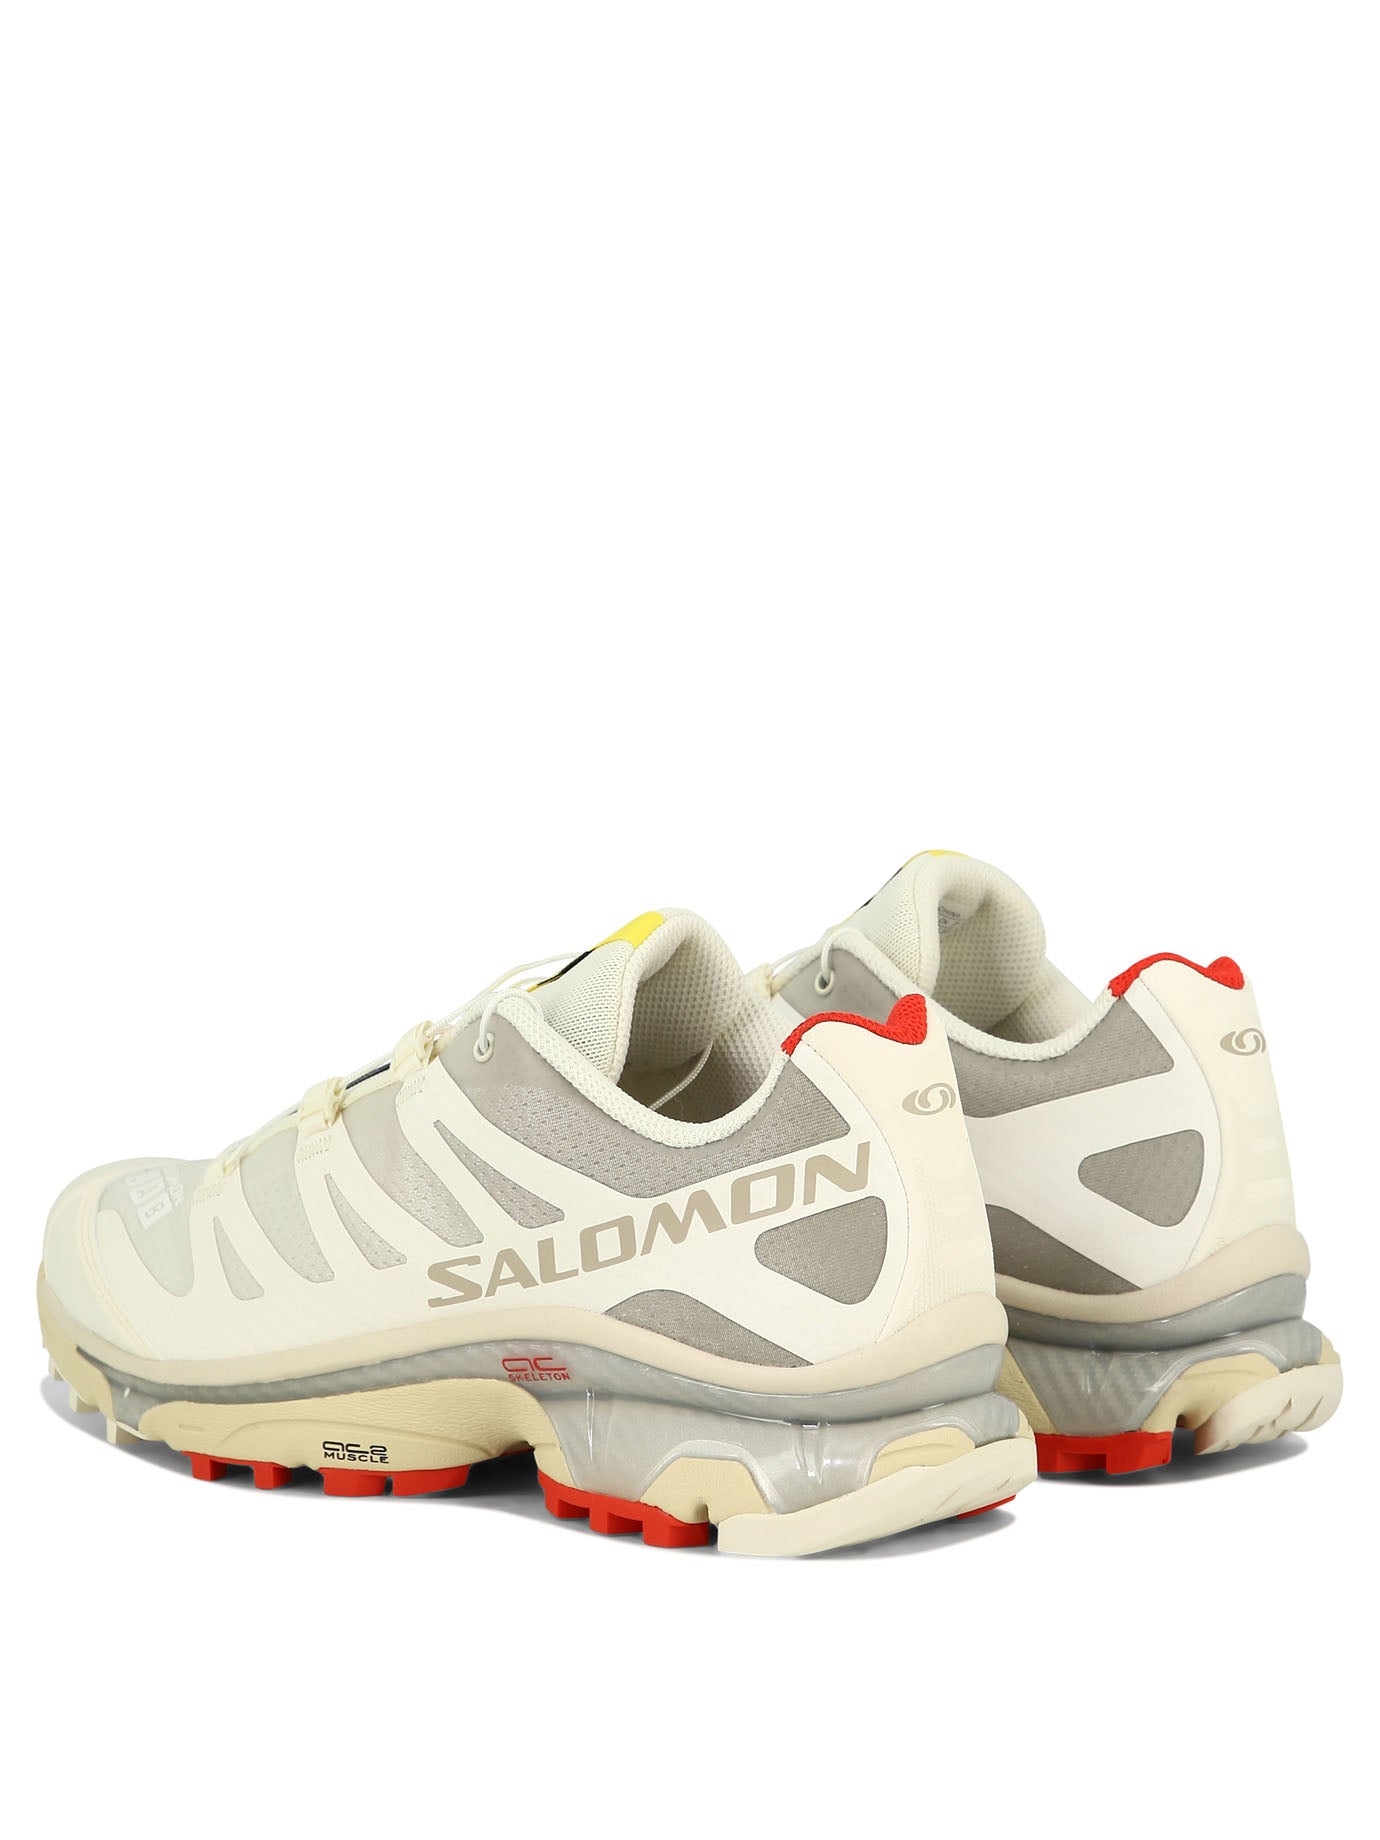 Salomon XT 4和运动鞋| Balardi